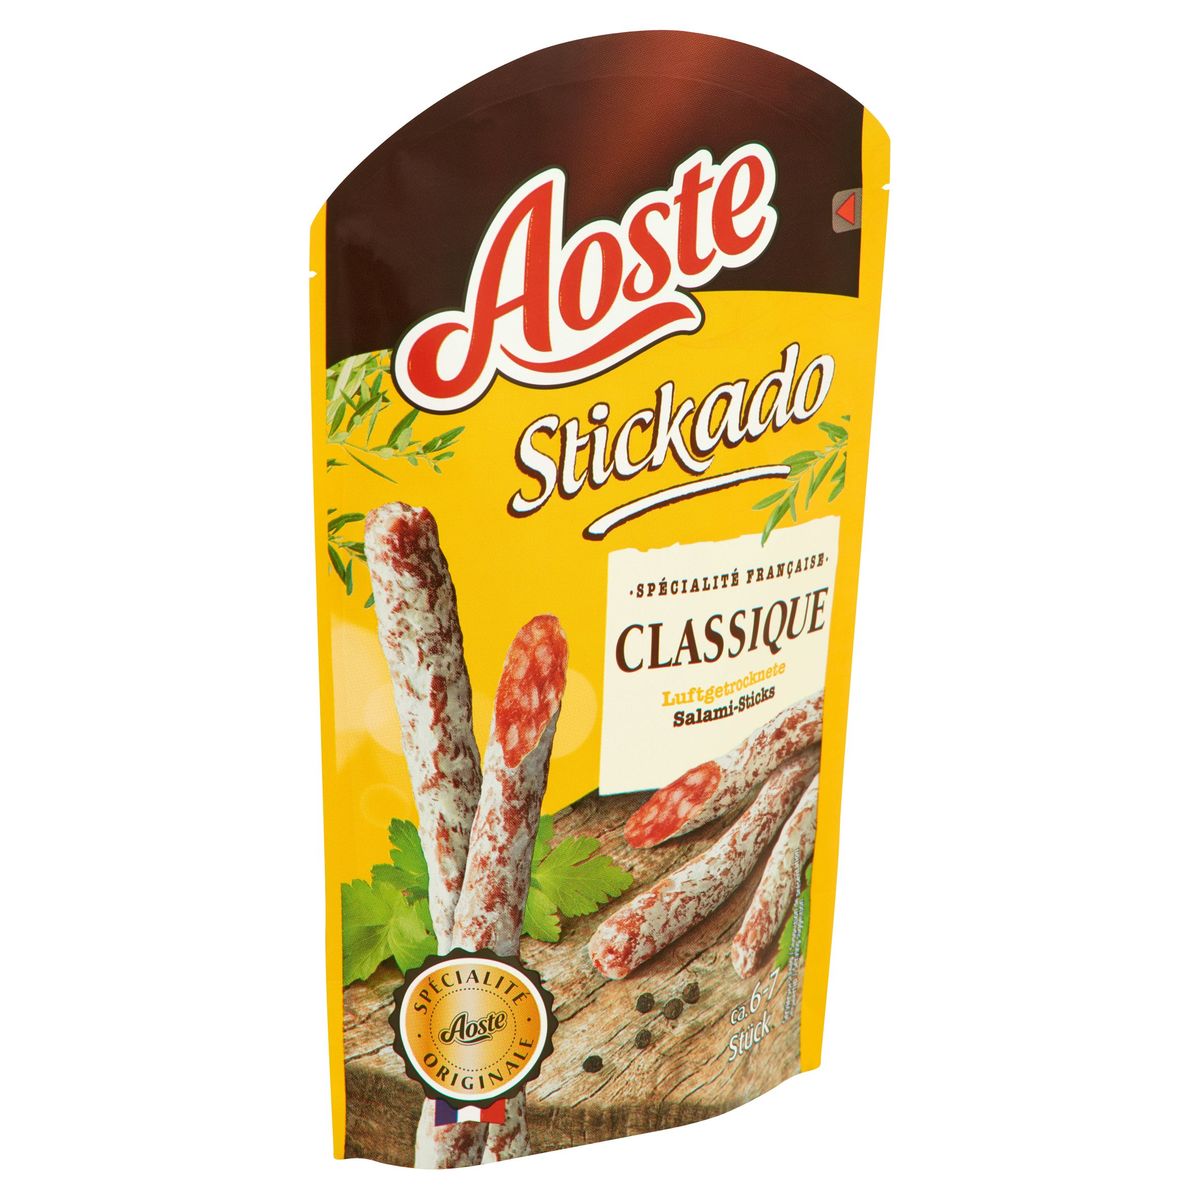 Aoste Stickado Classique Salami-Sticks 70 g